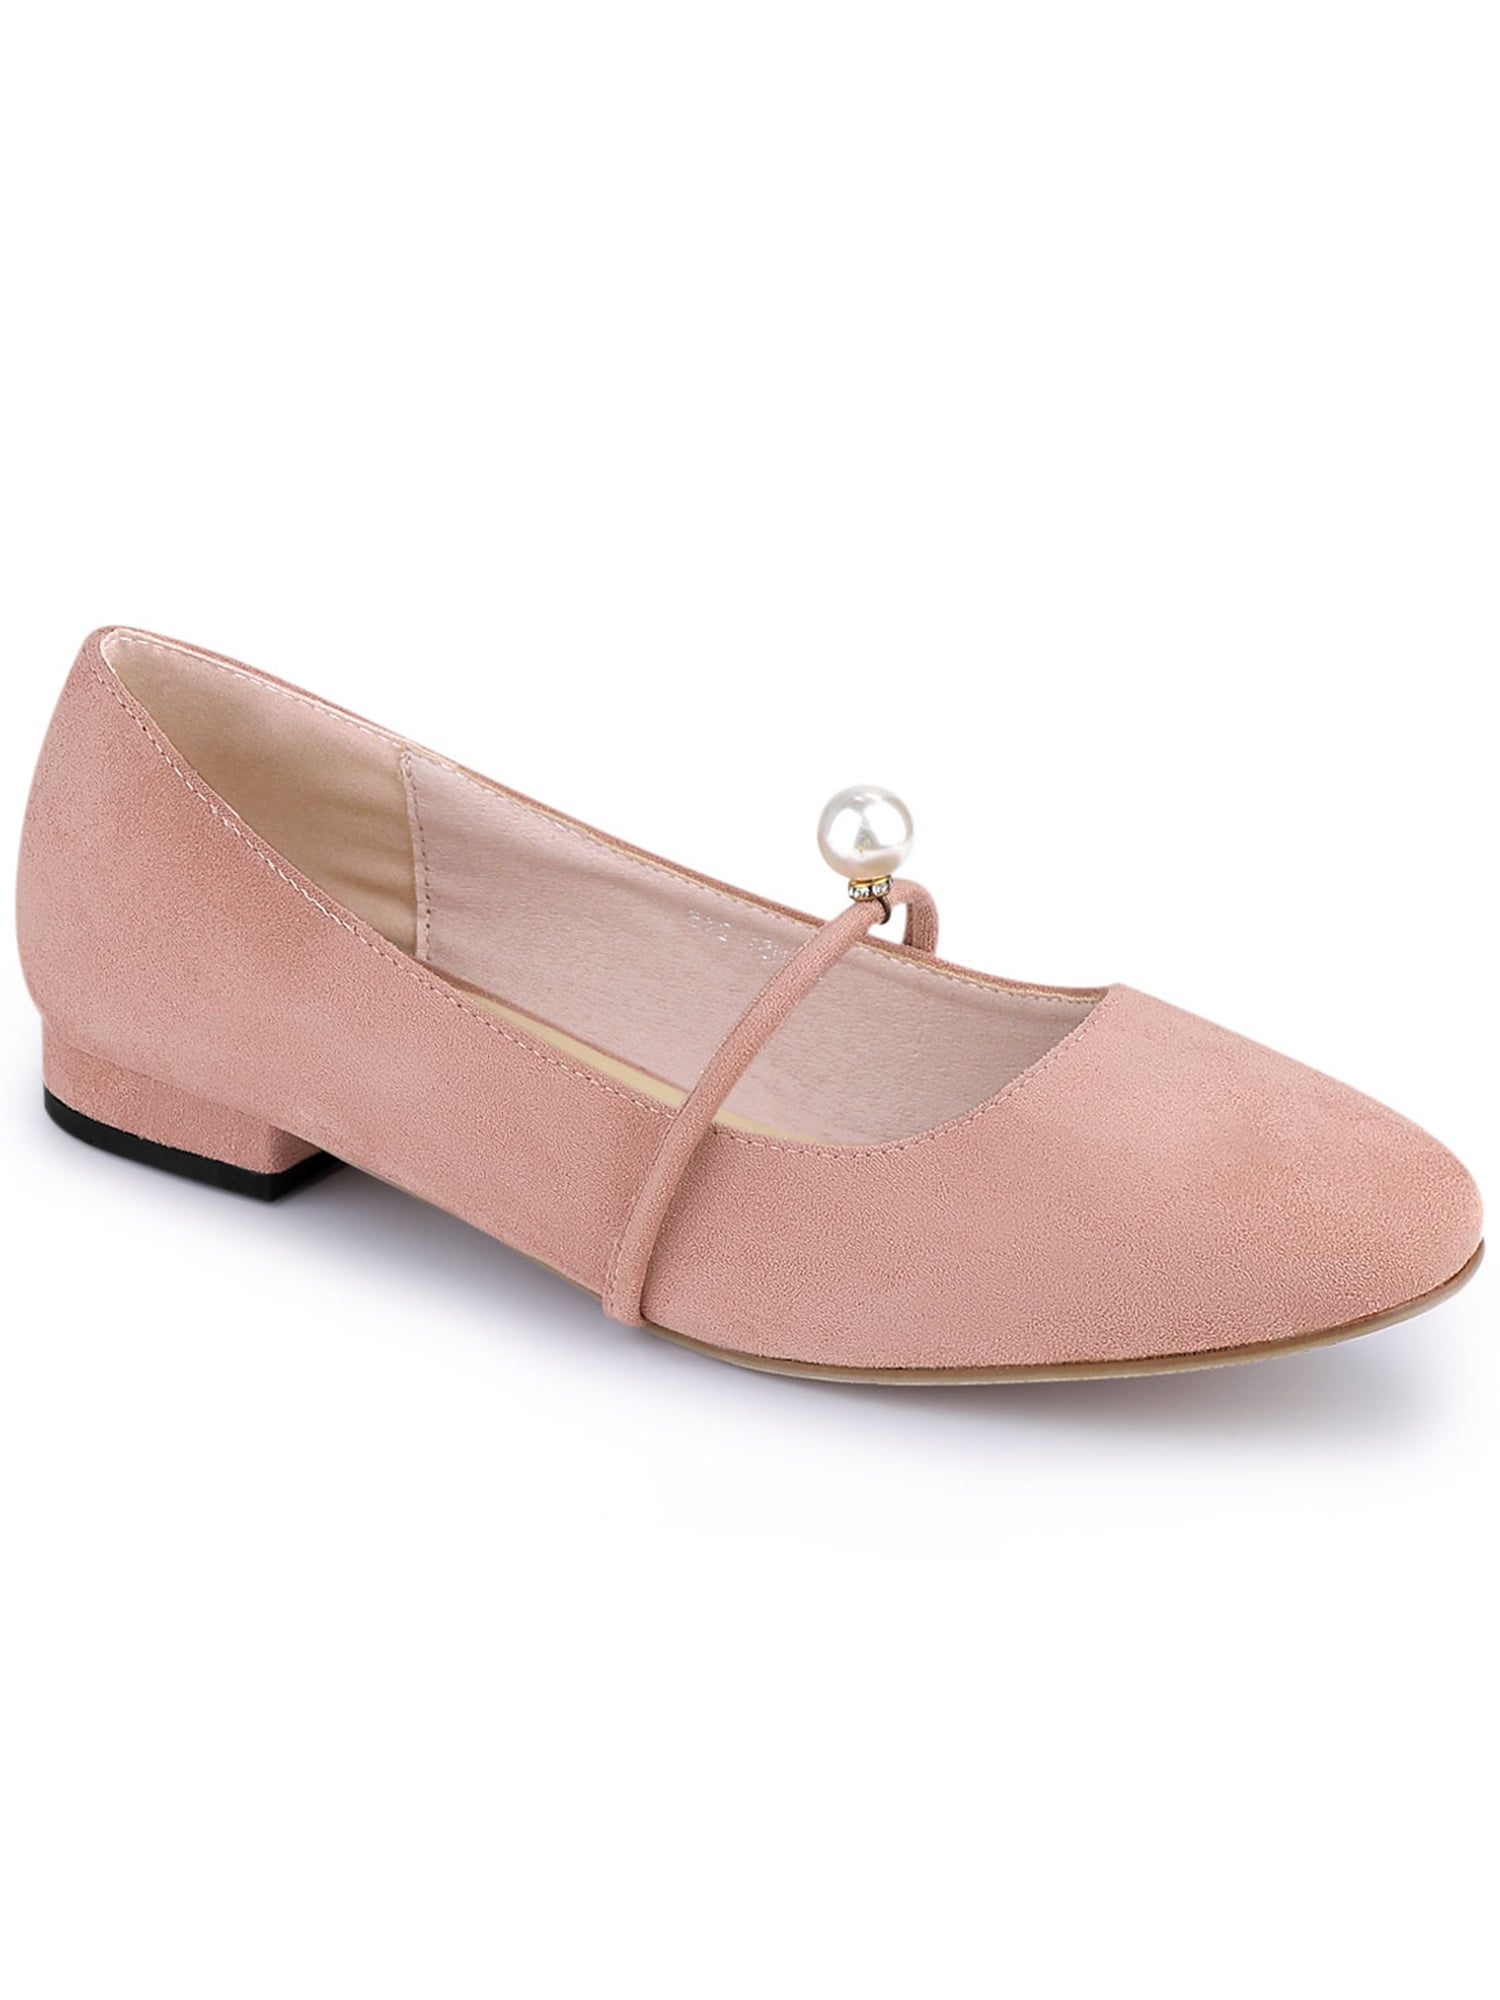 Allegra K Allegra K Women's Ballet Flat Round Toe Shoes